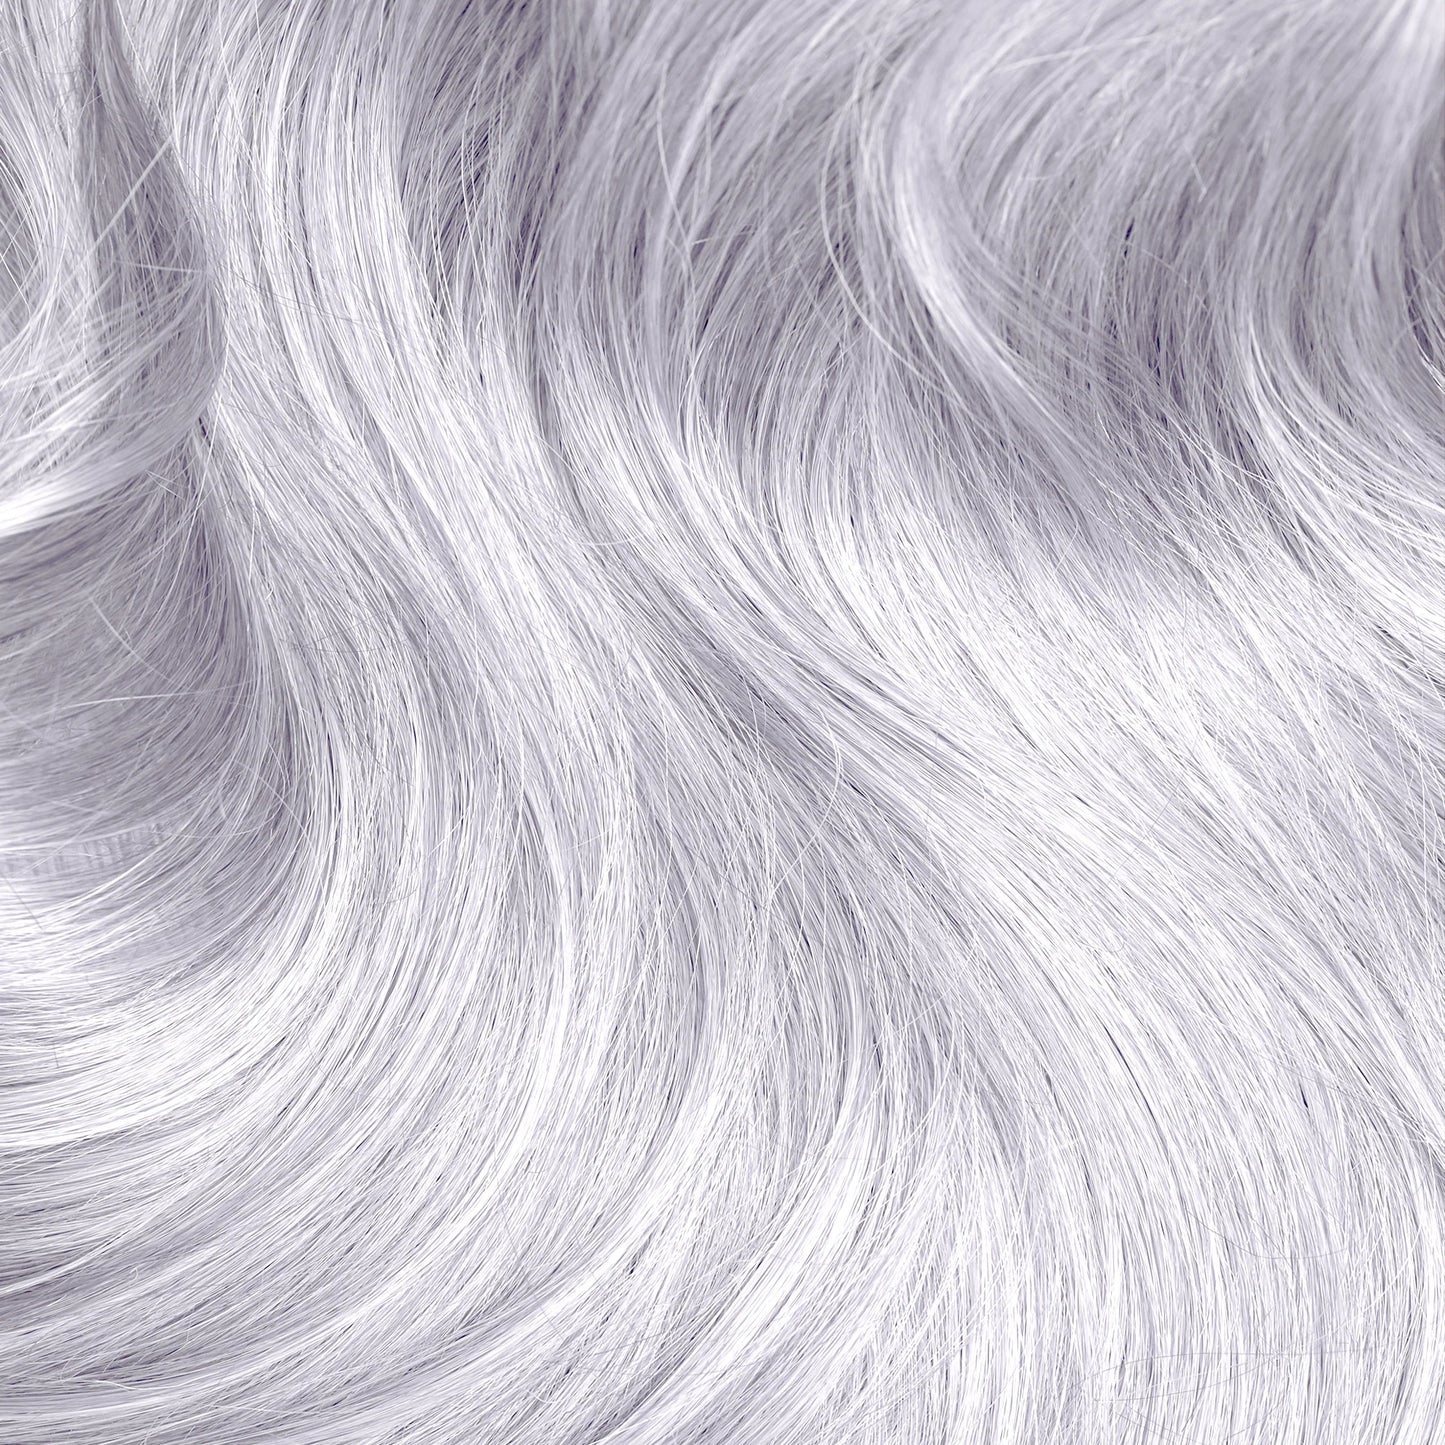 LUNAR WHITE TONER Lunar Tides hair tint